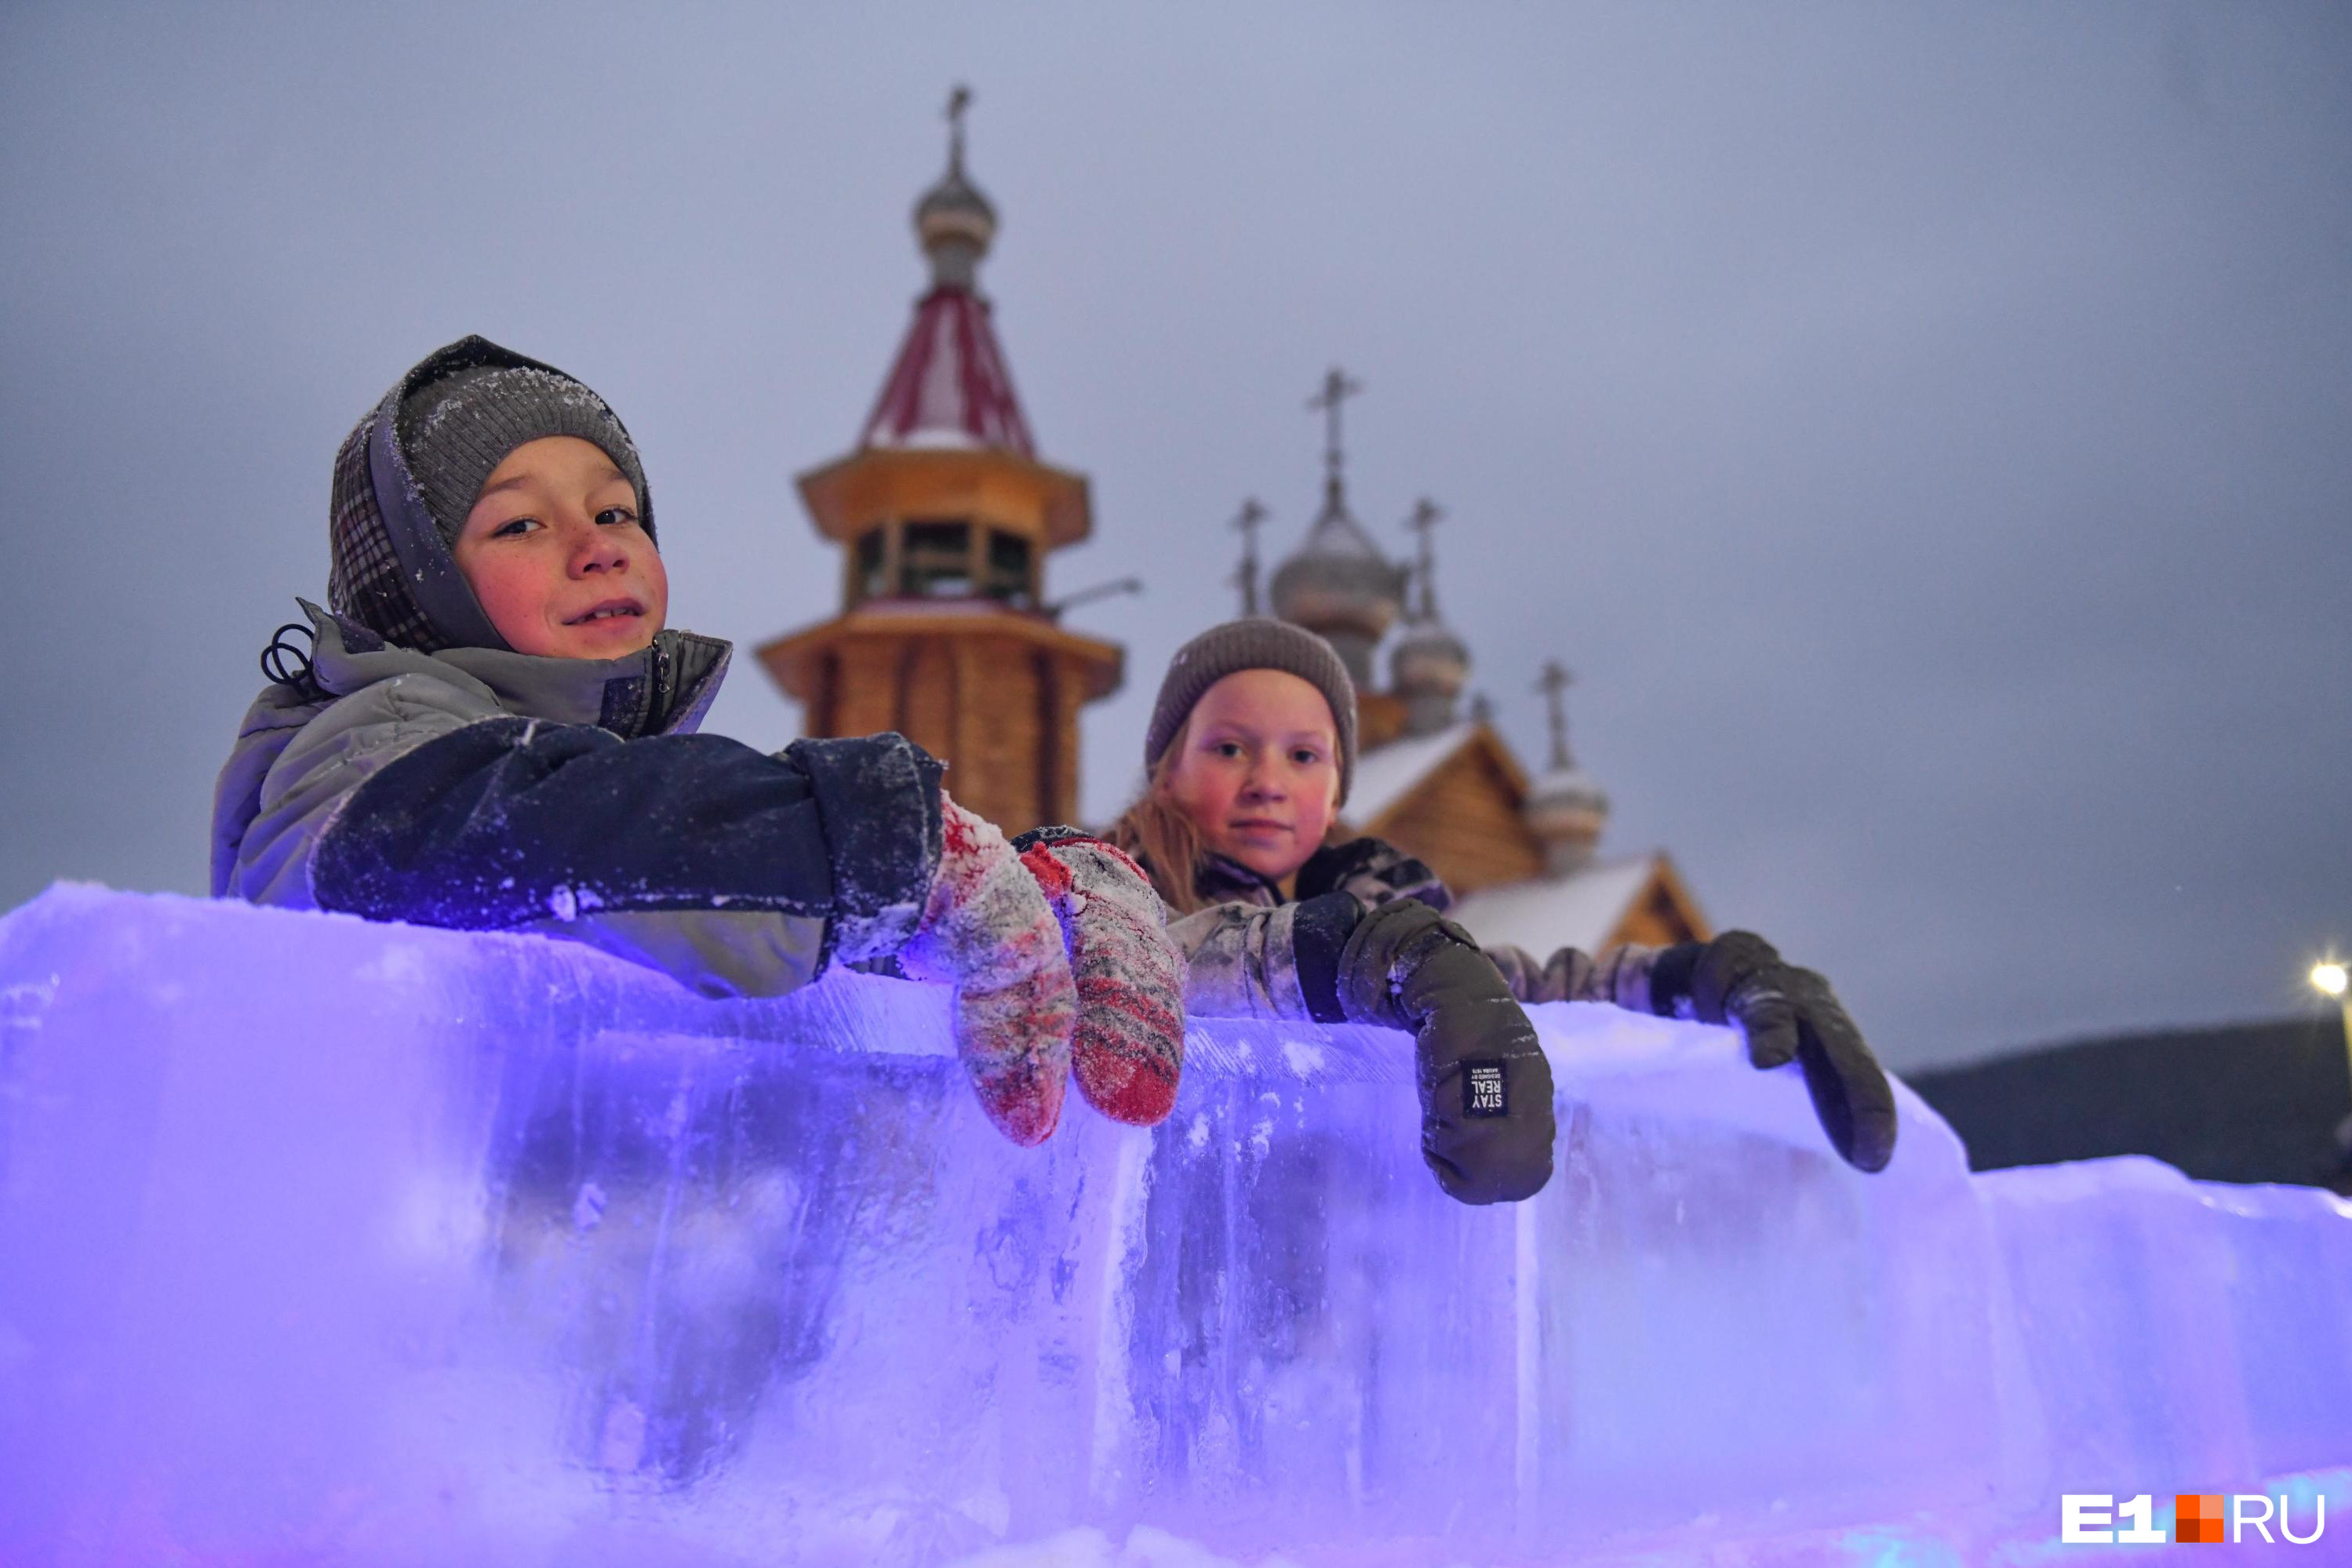 Как будет развиваться молодежный туризм в России?